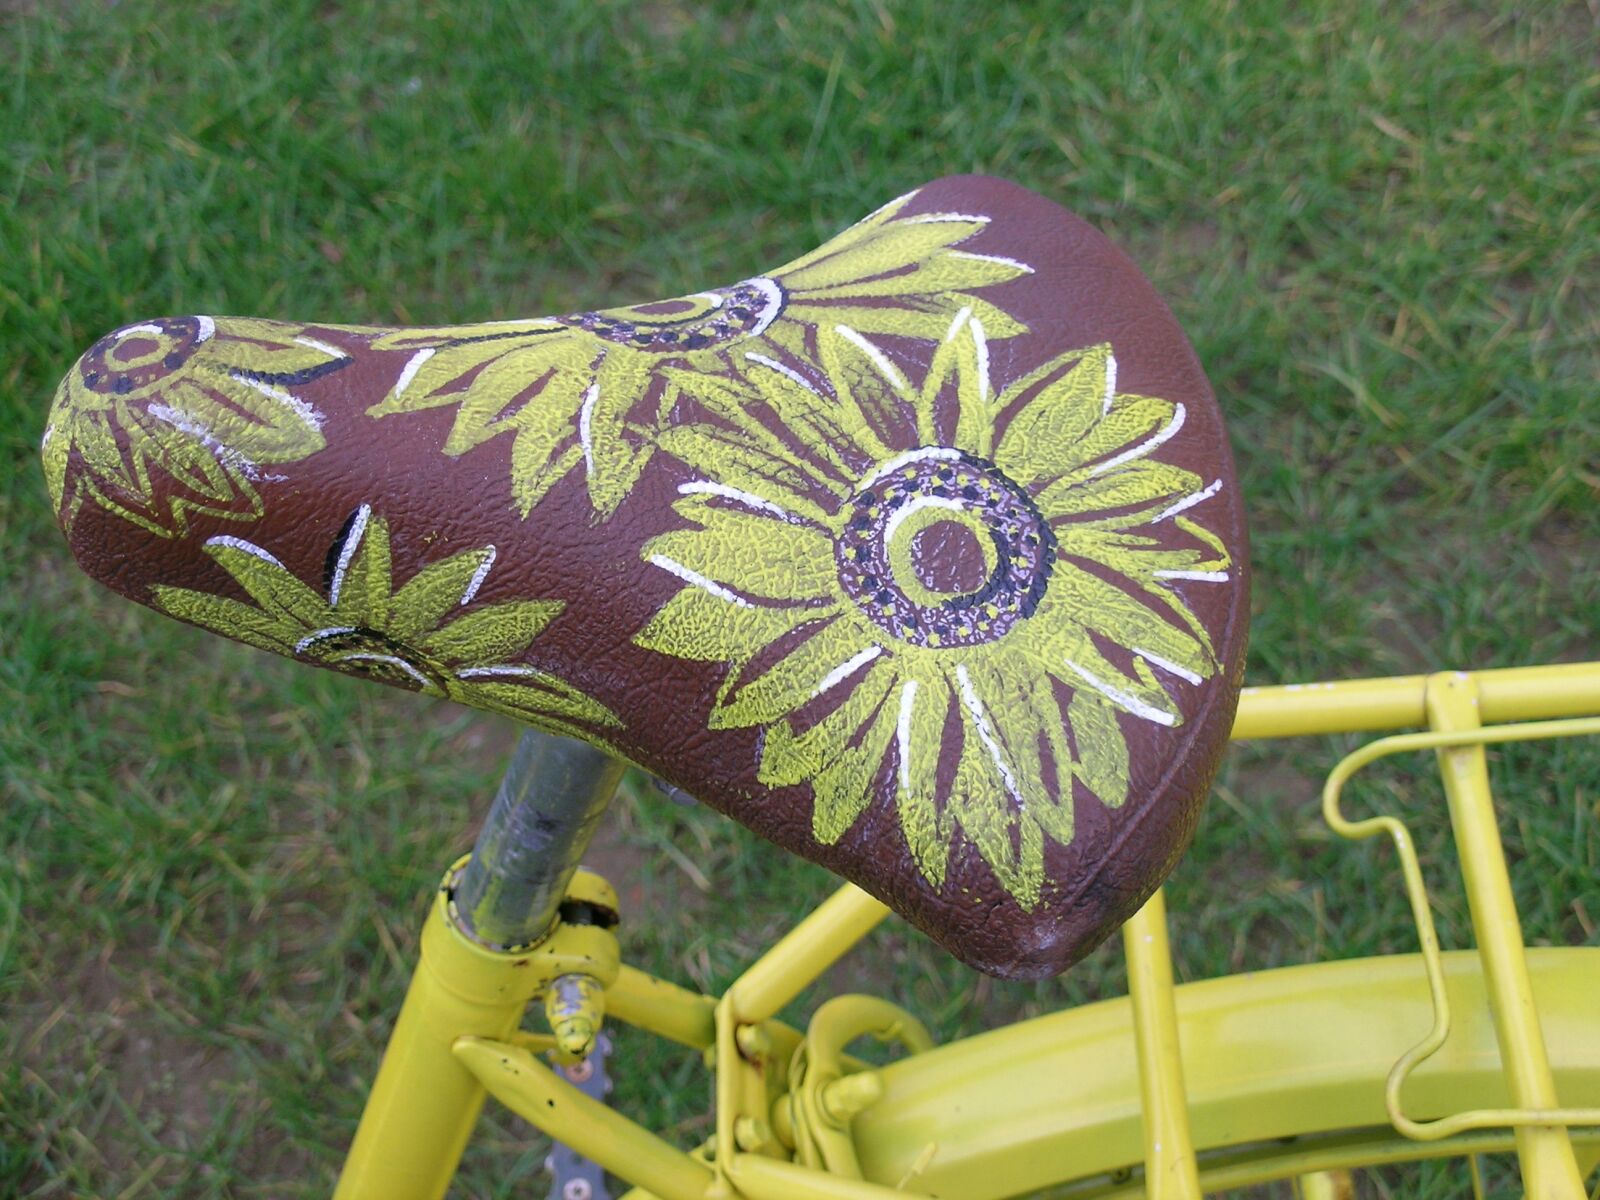 Nikon E5400 sample photo. Saddle, bicycle, flowers photography